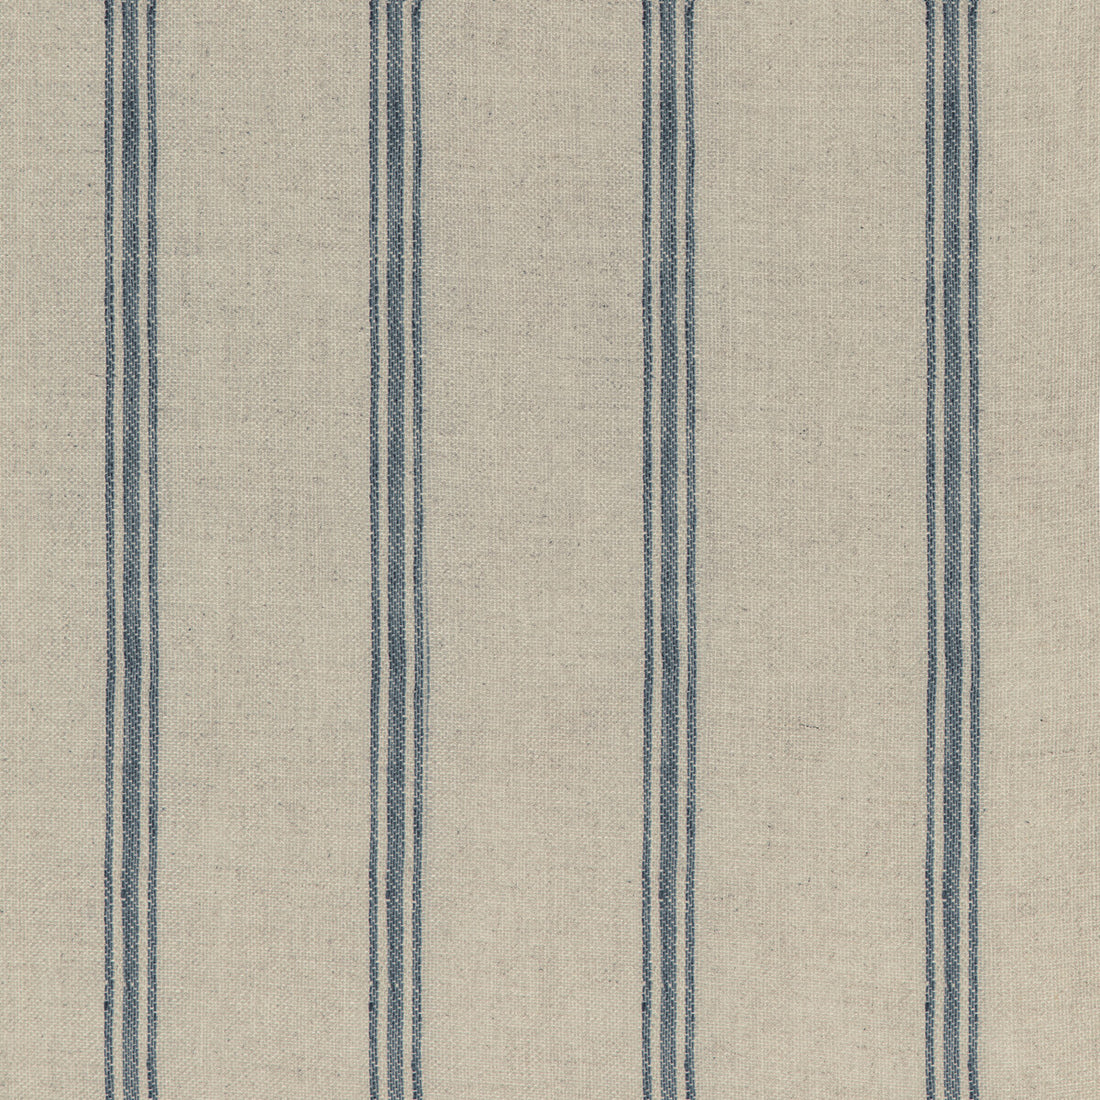 Kravet Design fabric in 4848-516 color - pattern 4848.516.0 - by Kravet Design